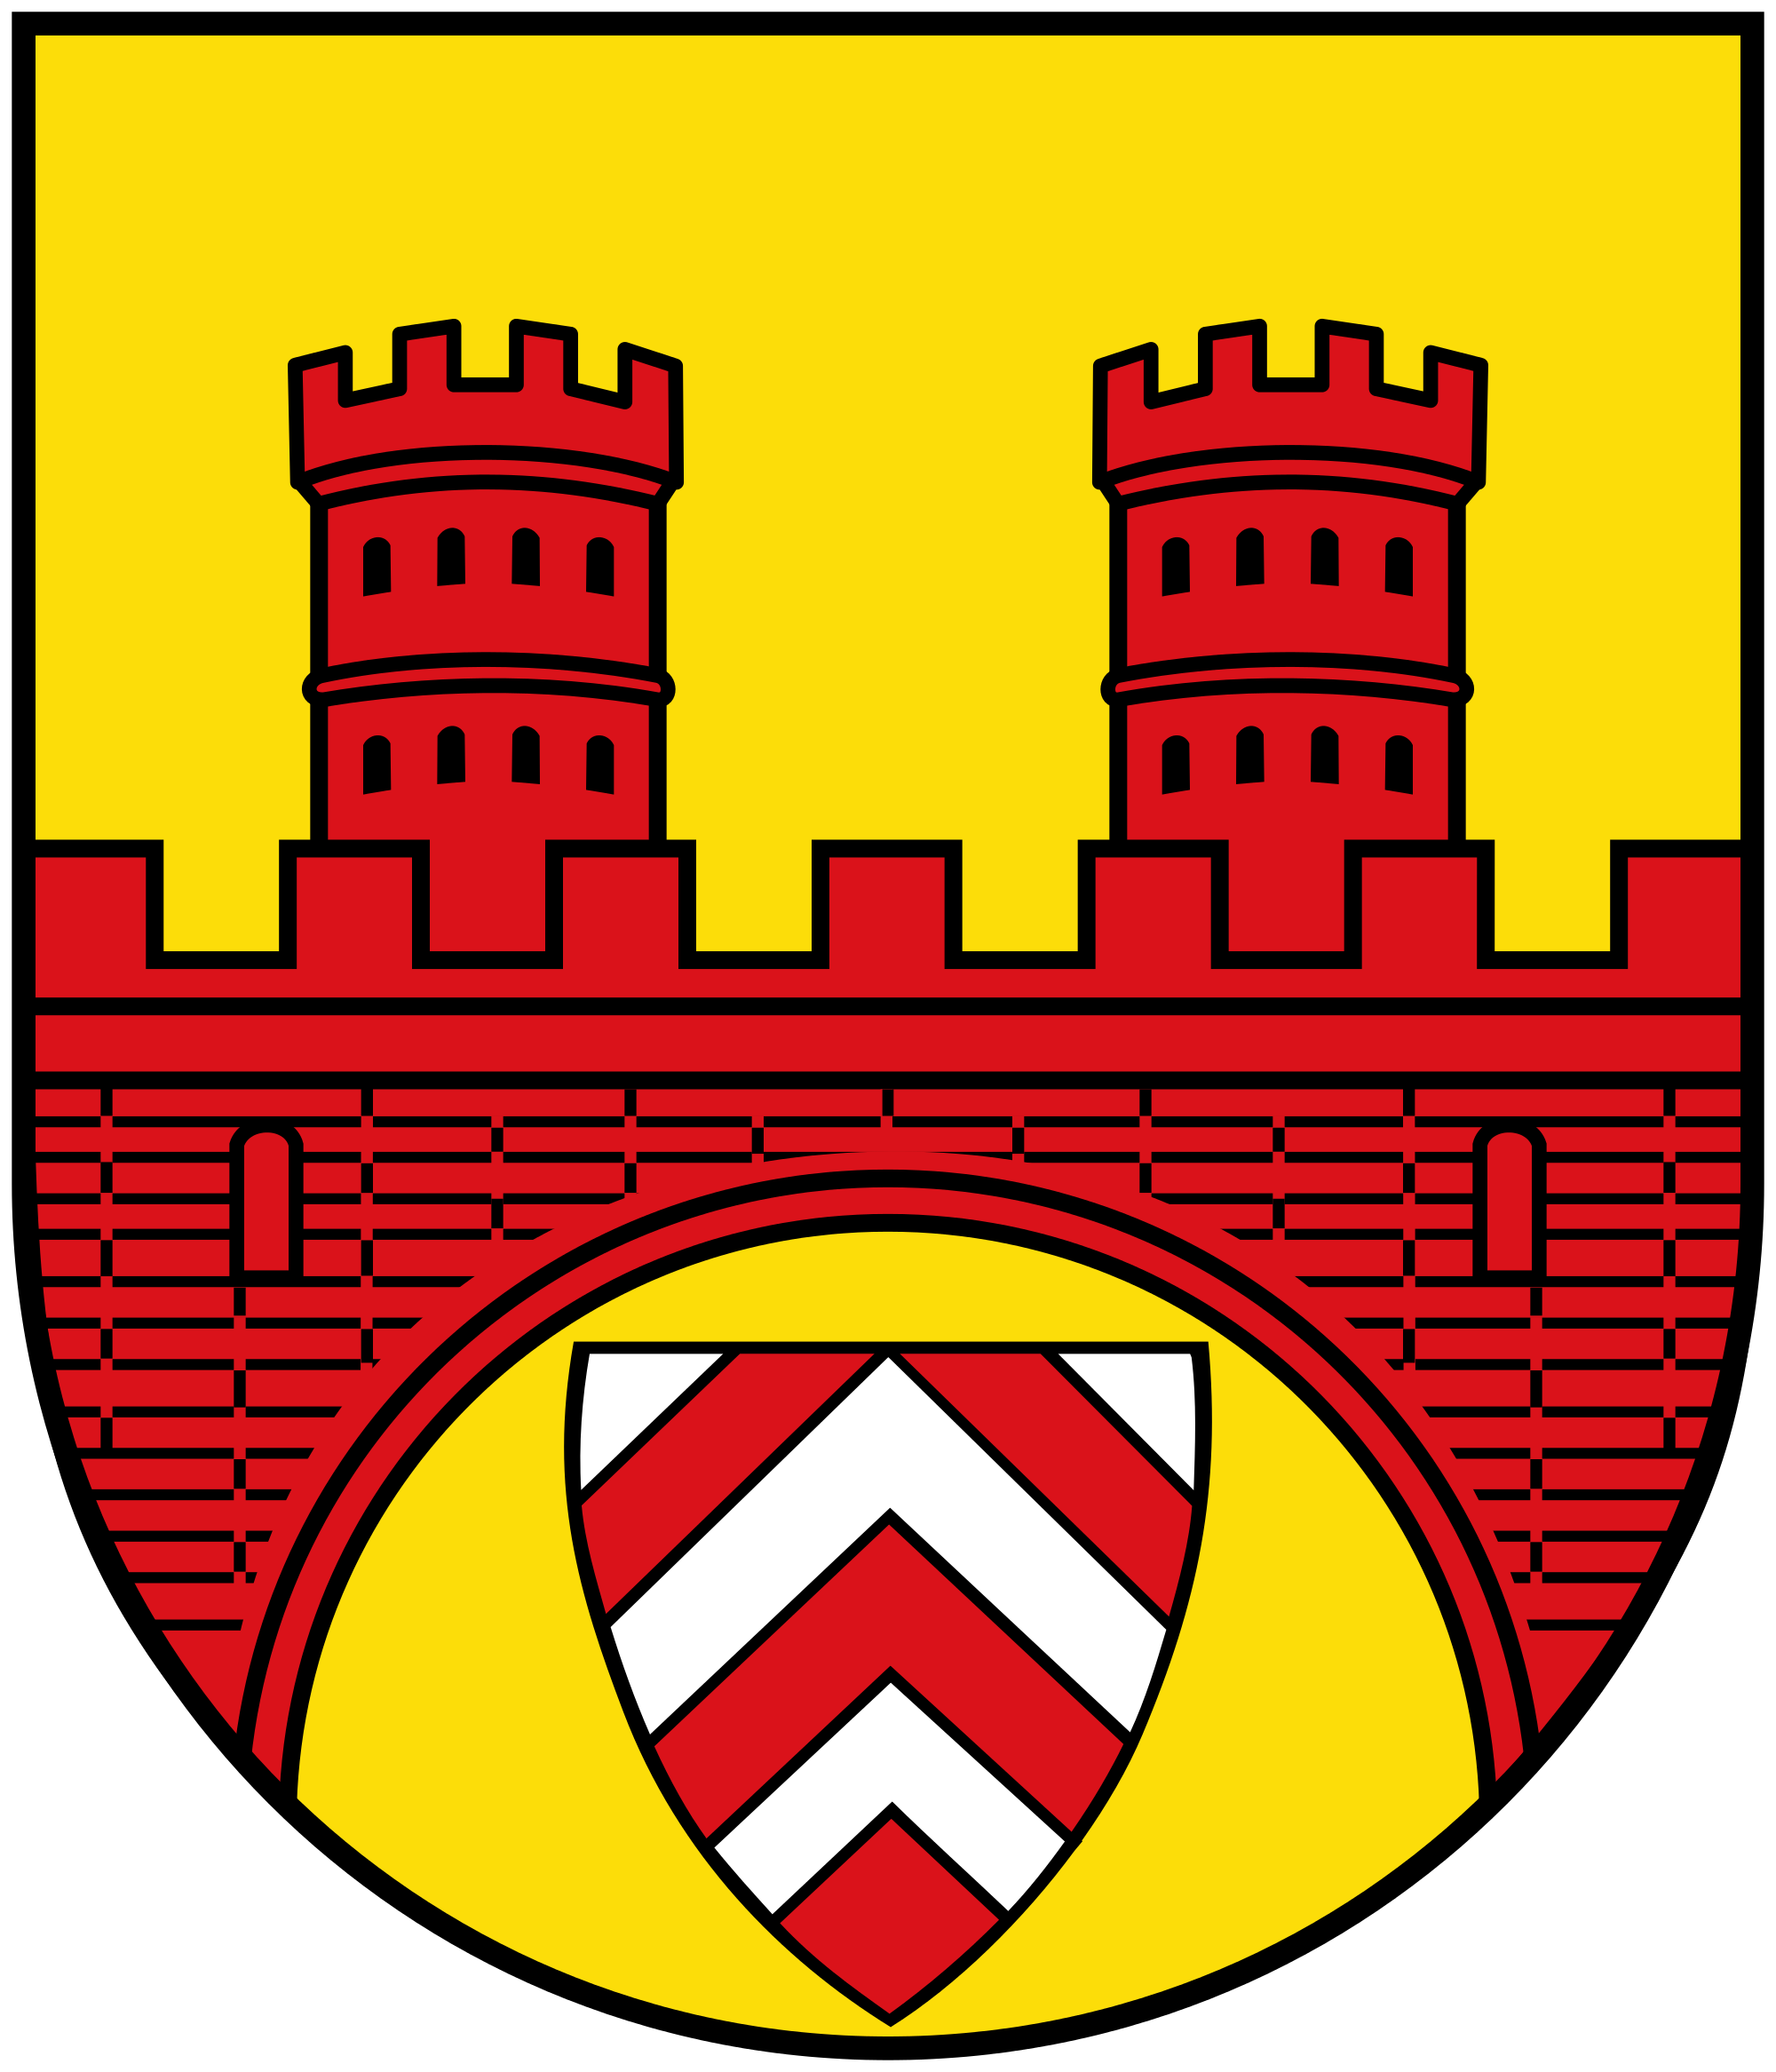 Wappen Bielefeld